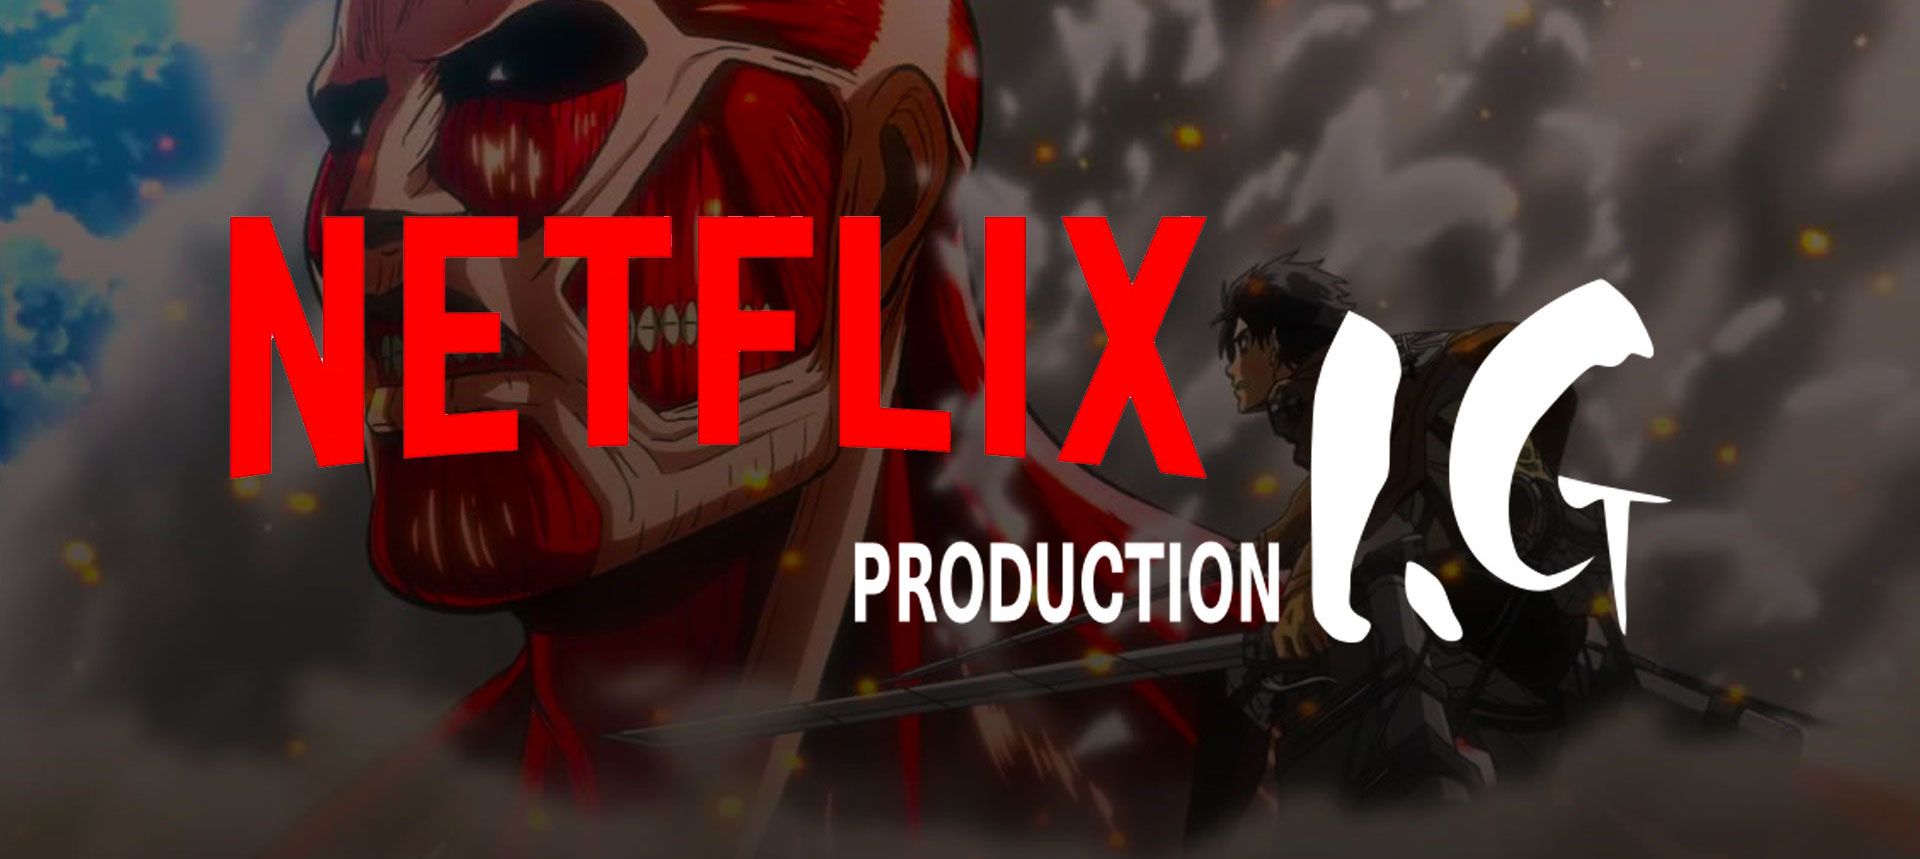 Netflix Production I.G